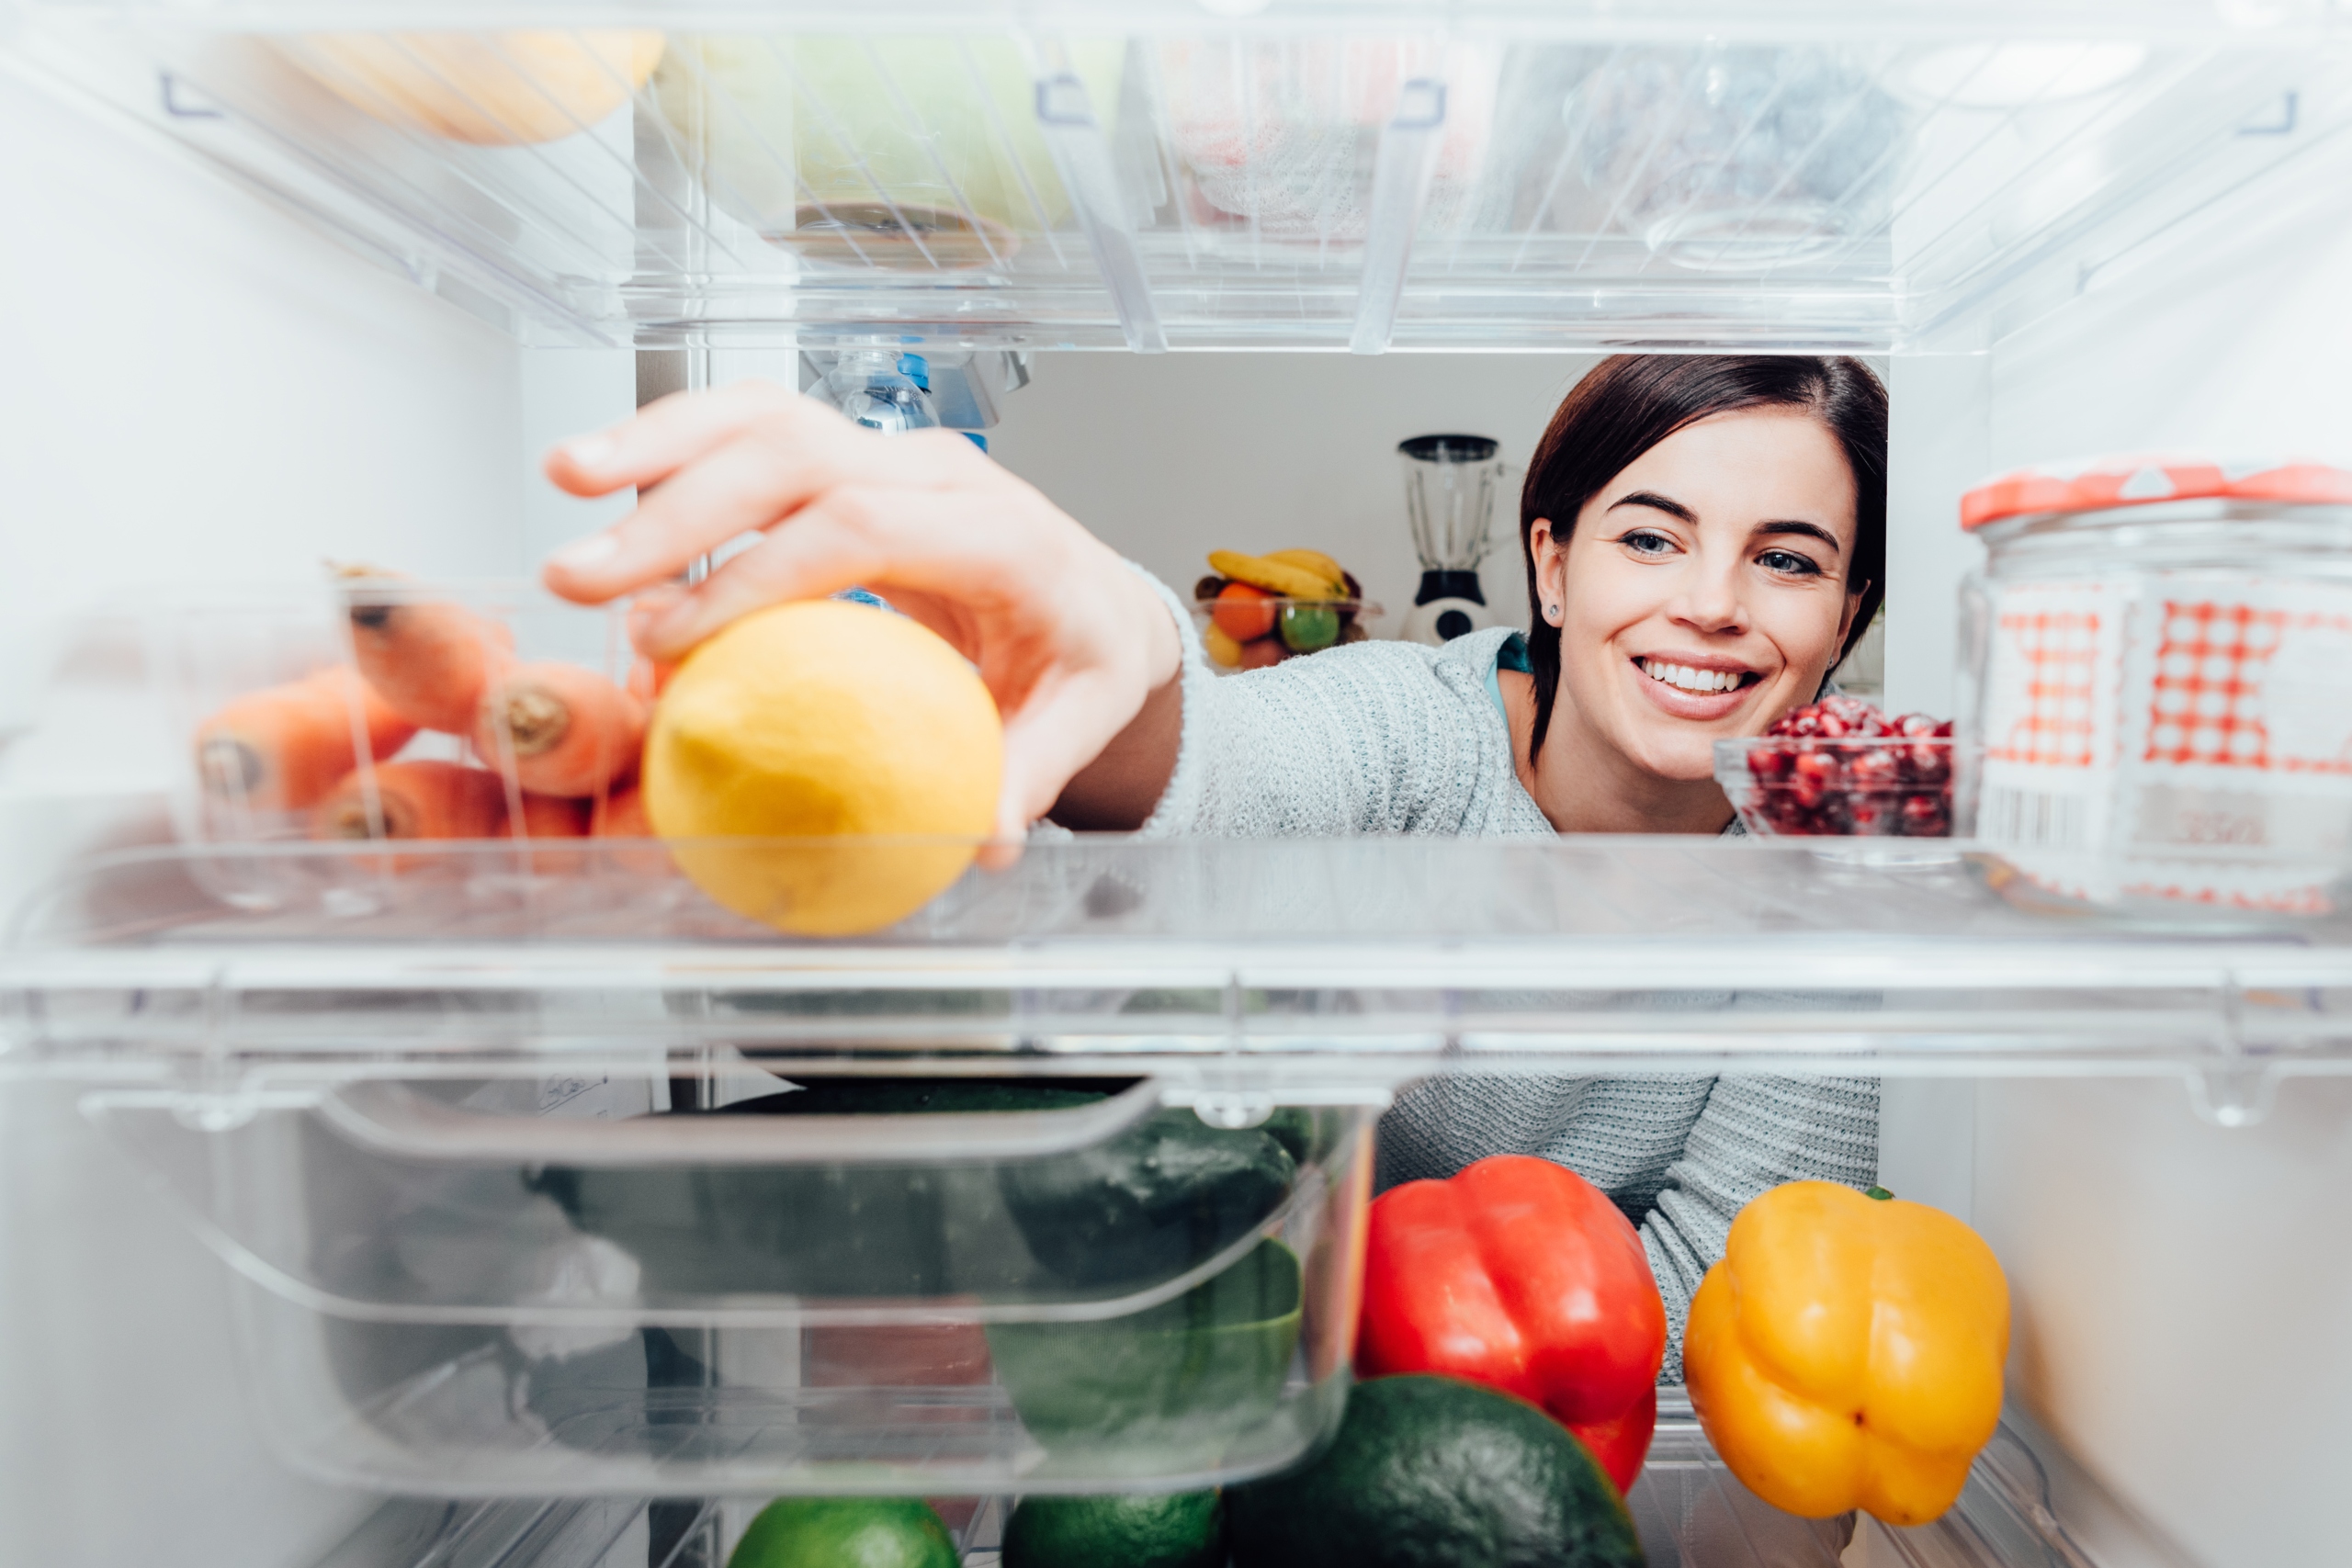 Woman opening fridge to get fruit